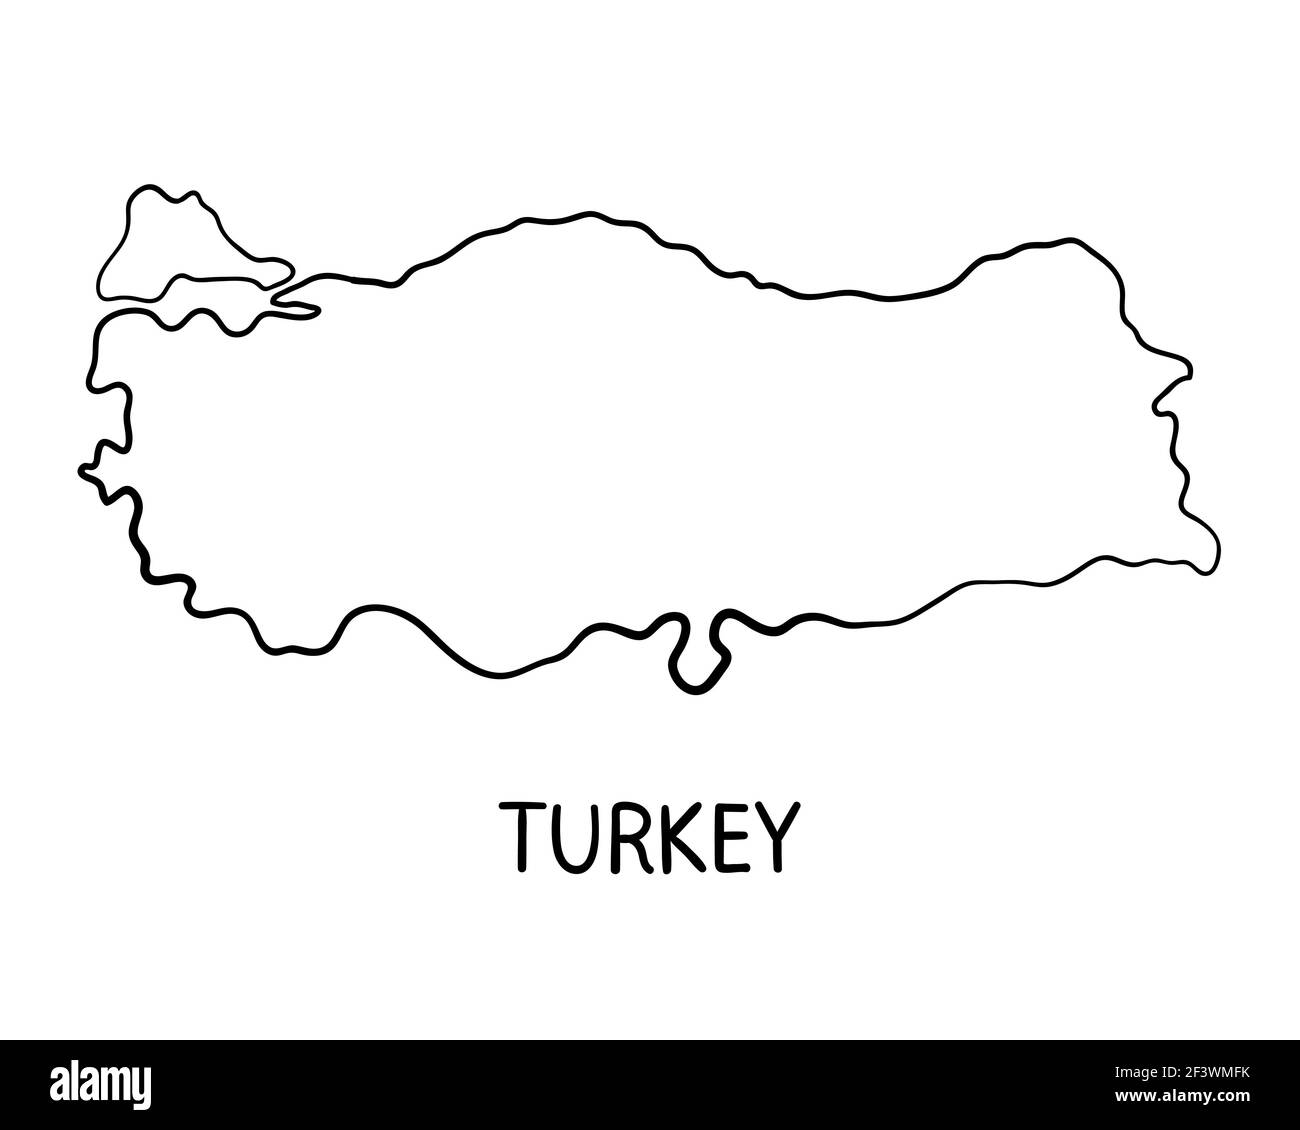 Illustrazione della mappa della Turchia disegnata a mano Foto Stock